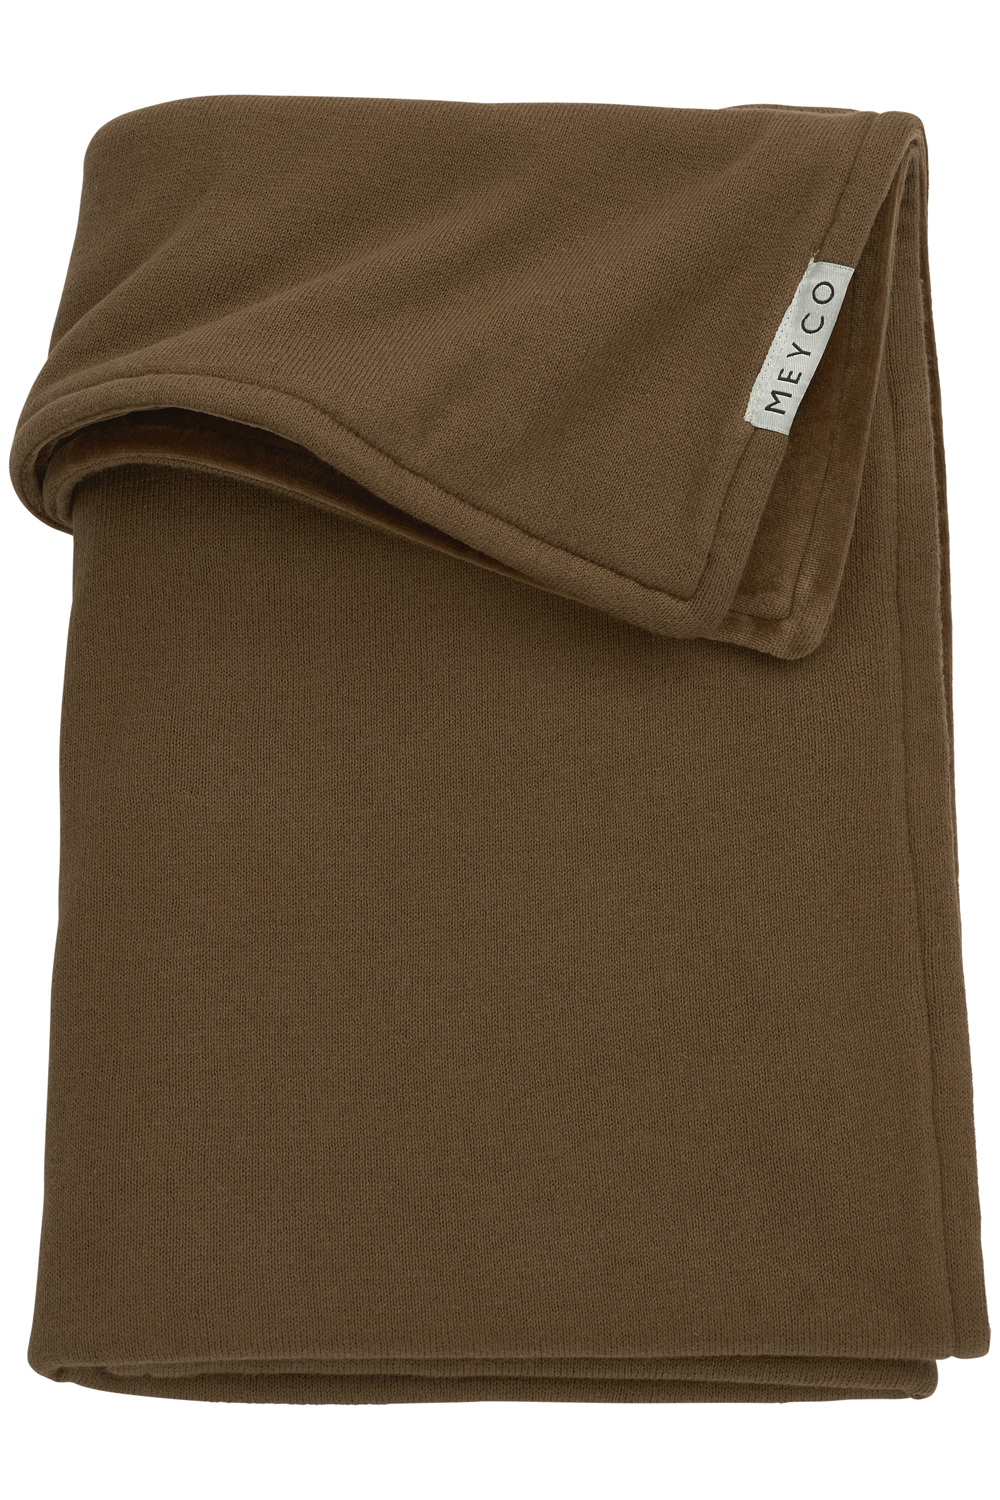 Crib bed blanket Knit Basic velvet - chocolate - 75x100cm